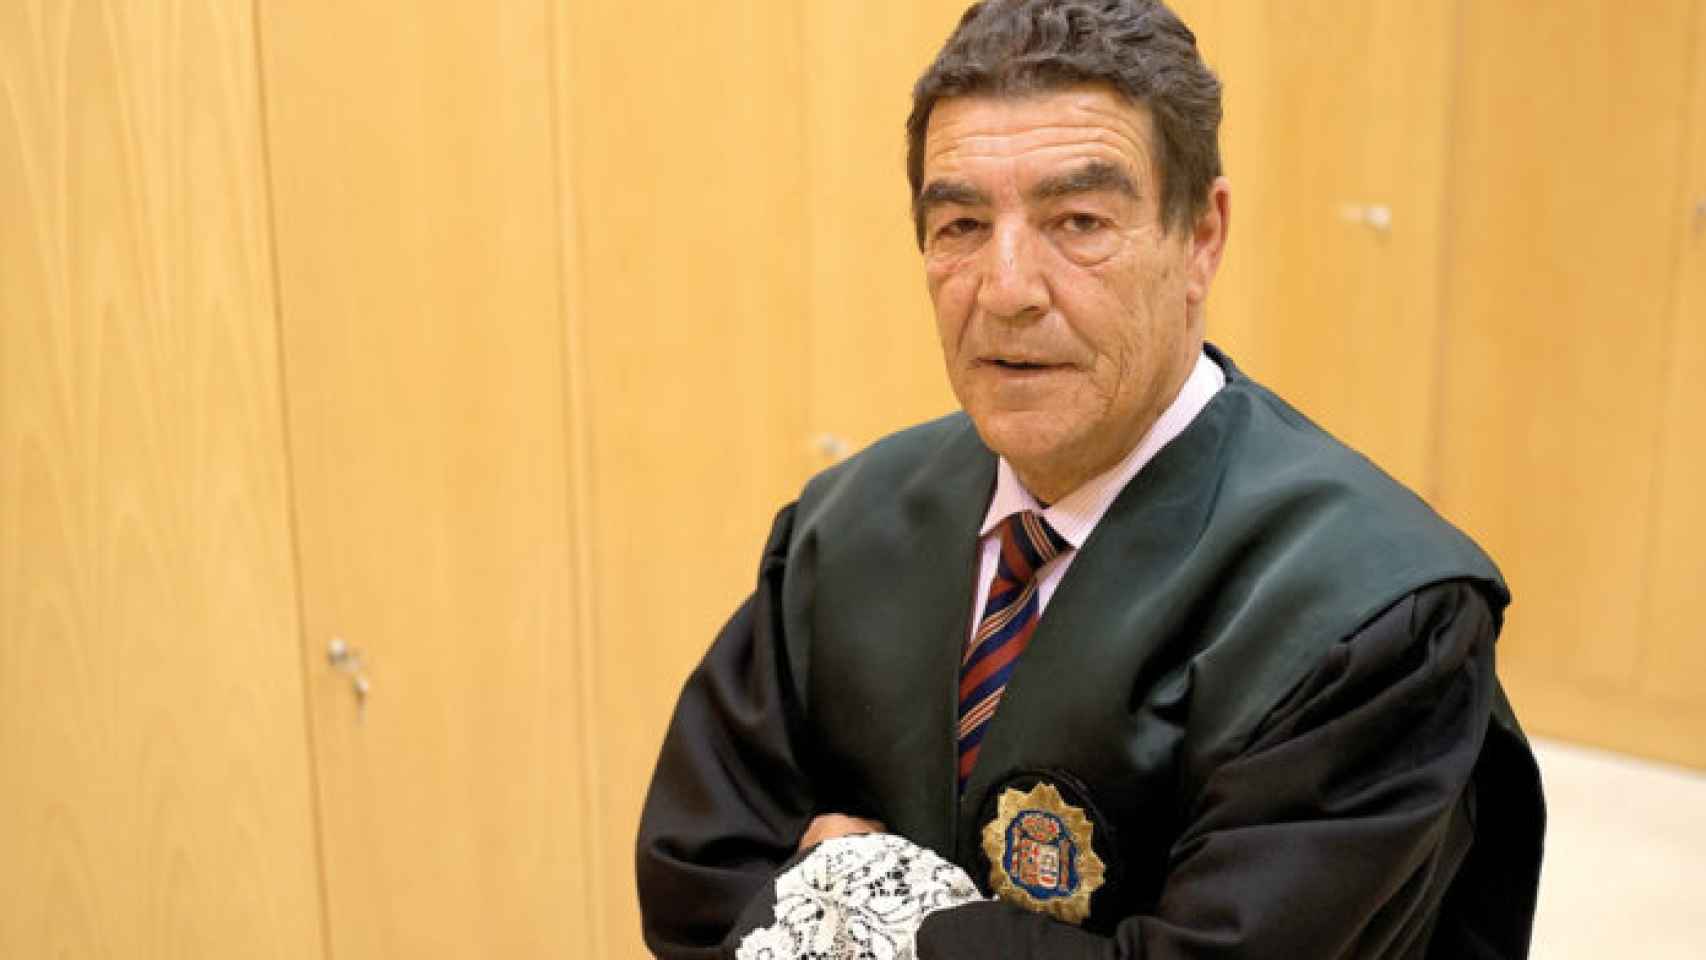 El juez Emilio Calatayud, ataviado con su toga, en una imagen de archivo.